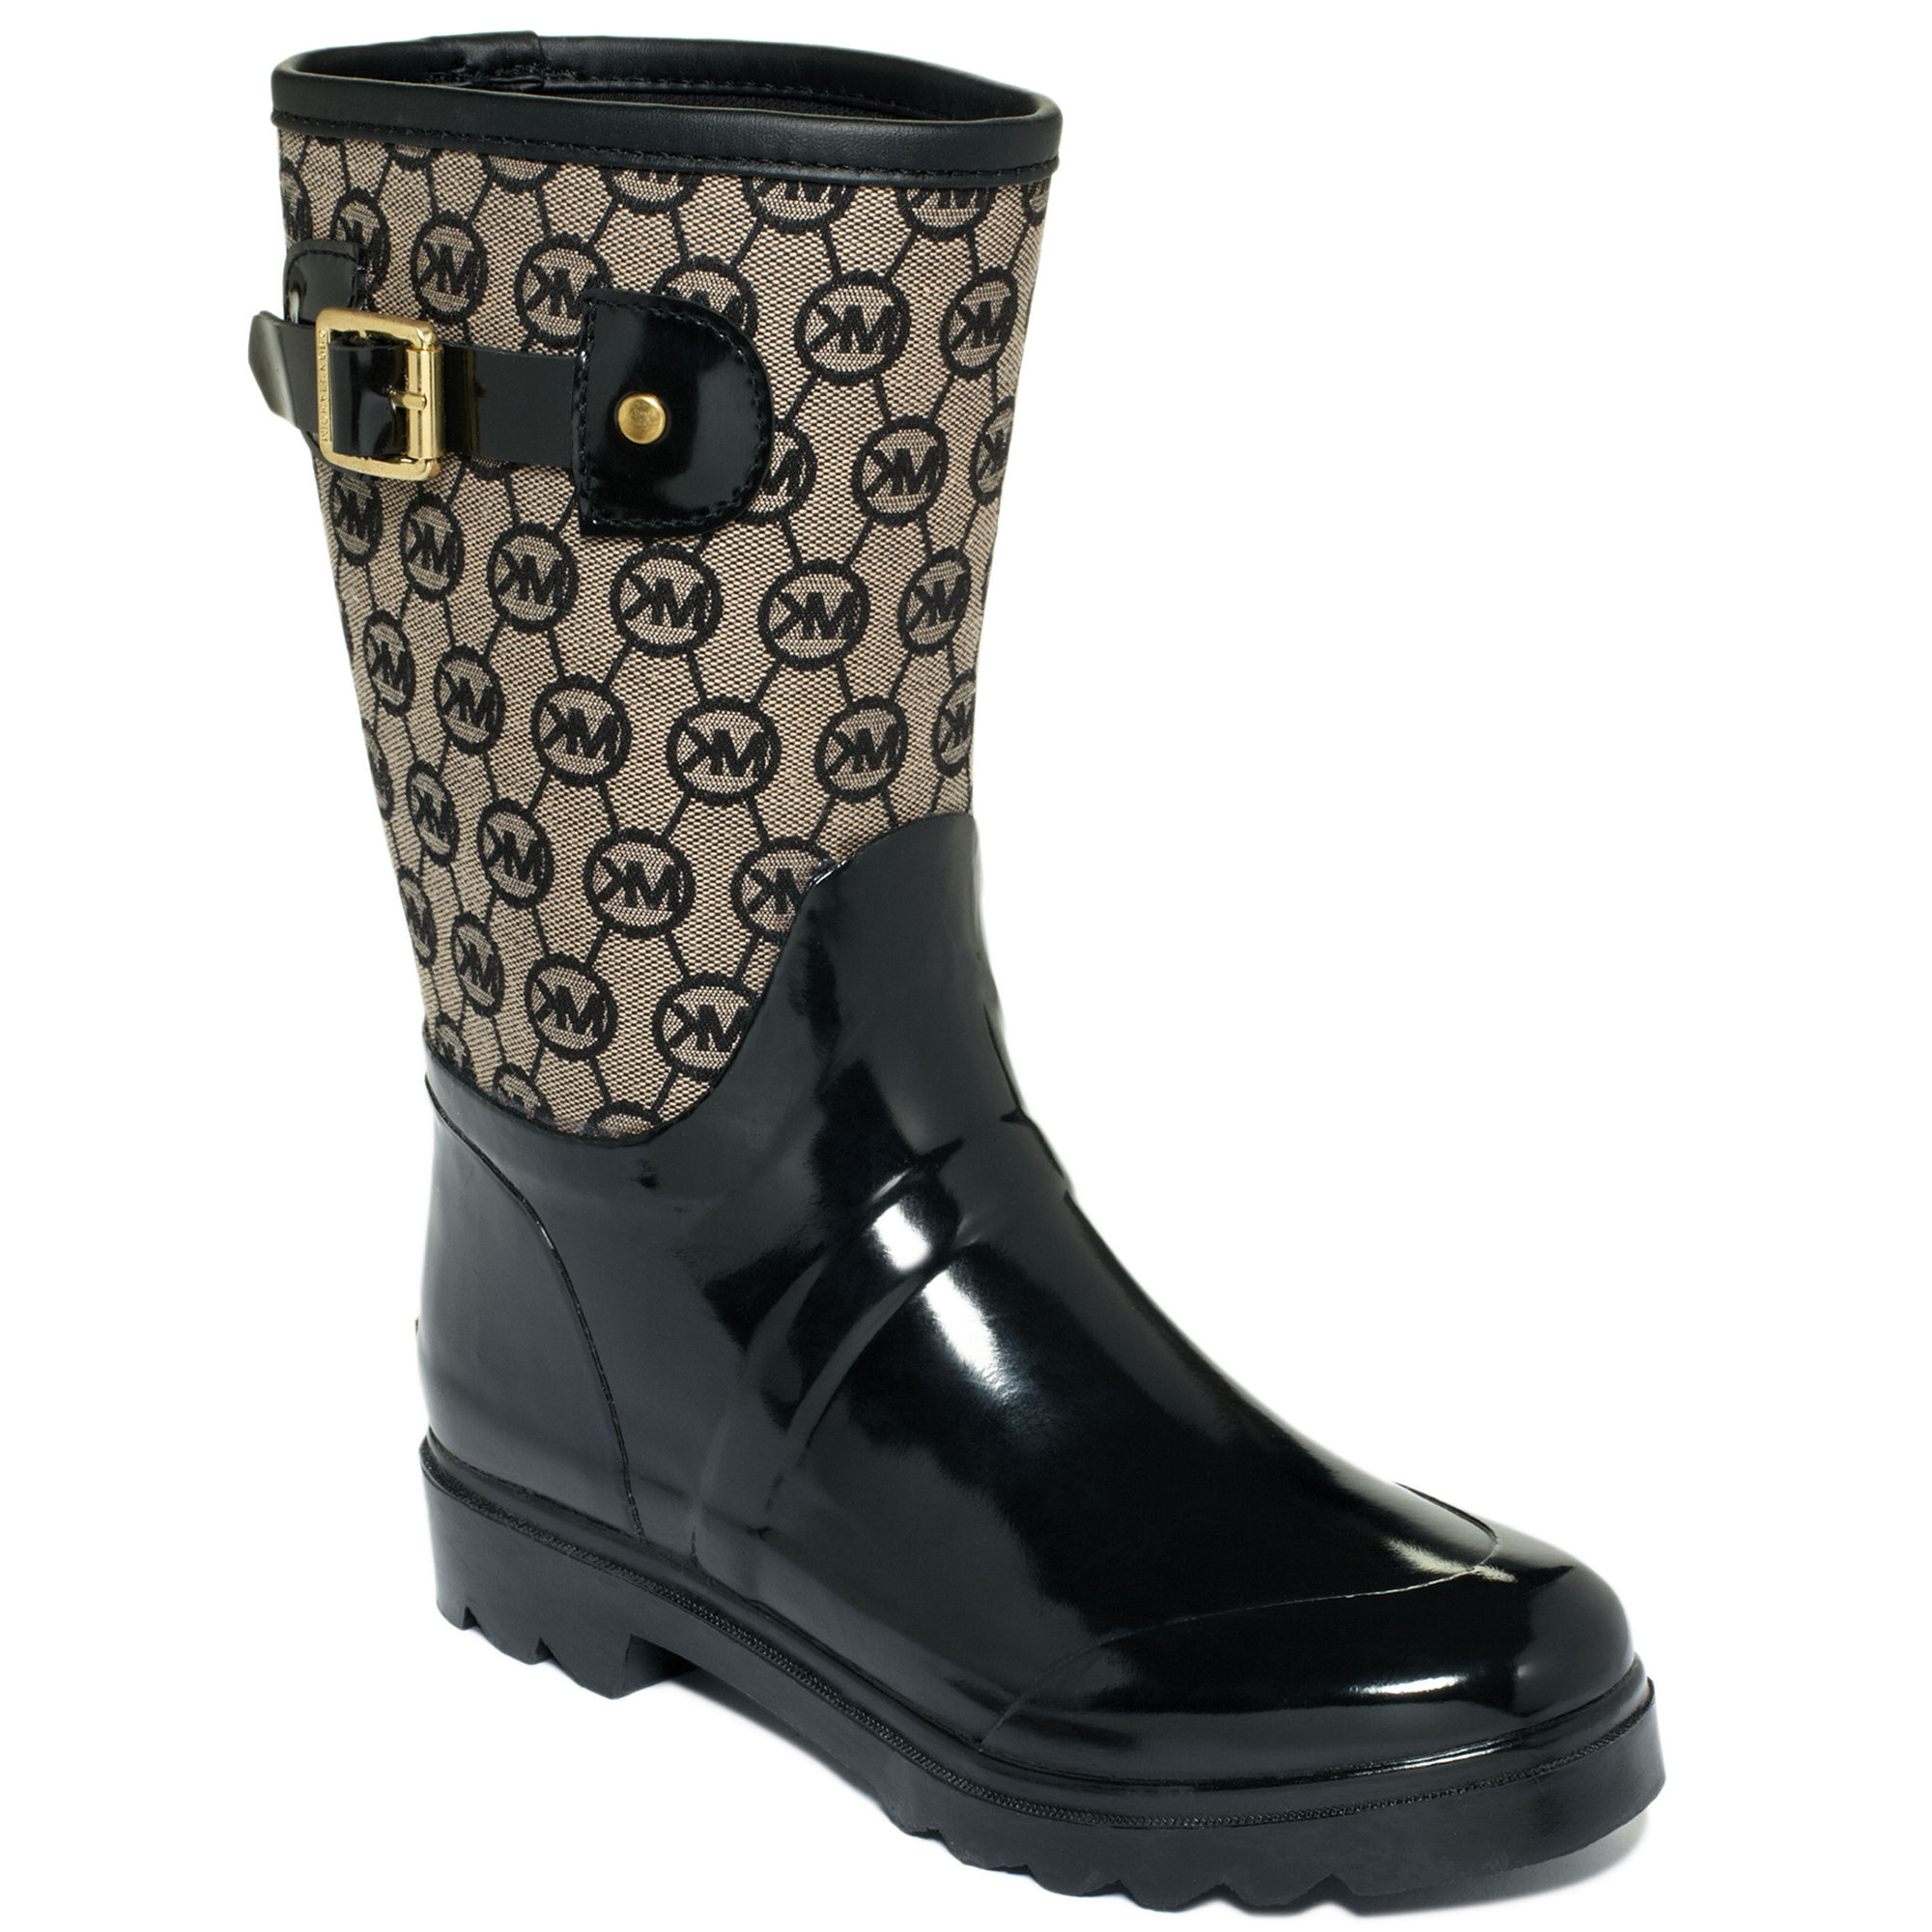 mk logo rain boots